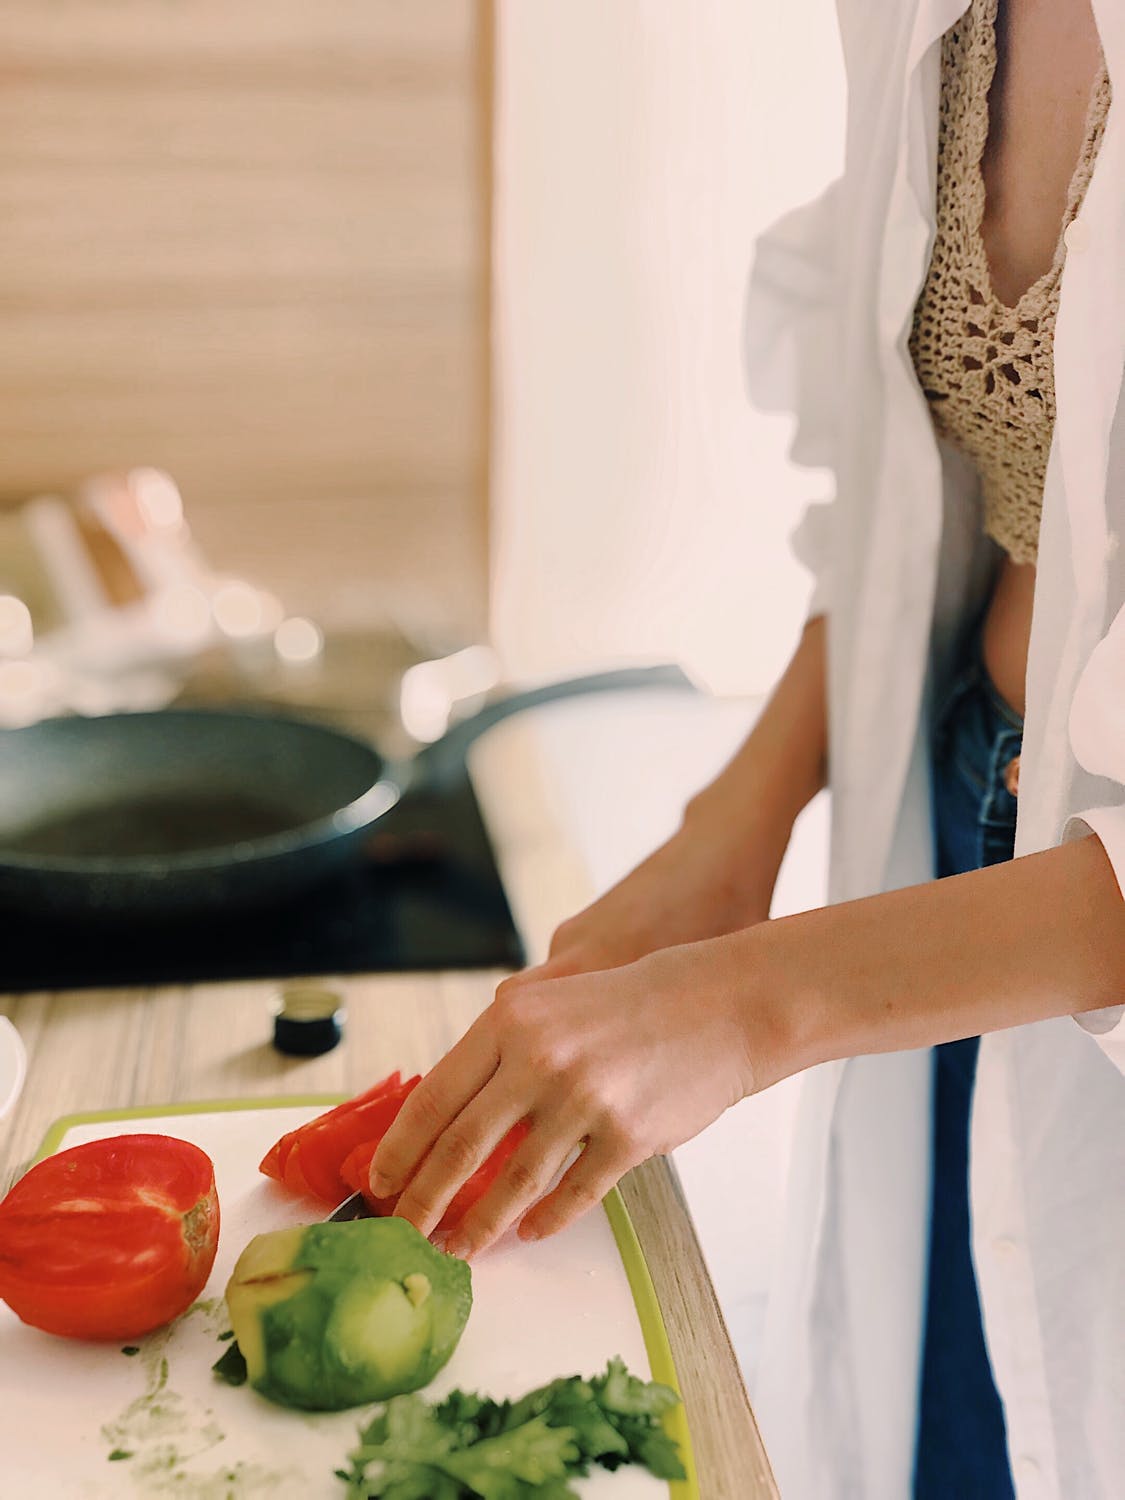 Mujer cortando los vegetales sobre una tabla mientras cocina. | Imagen: Pexels